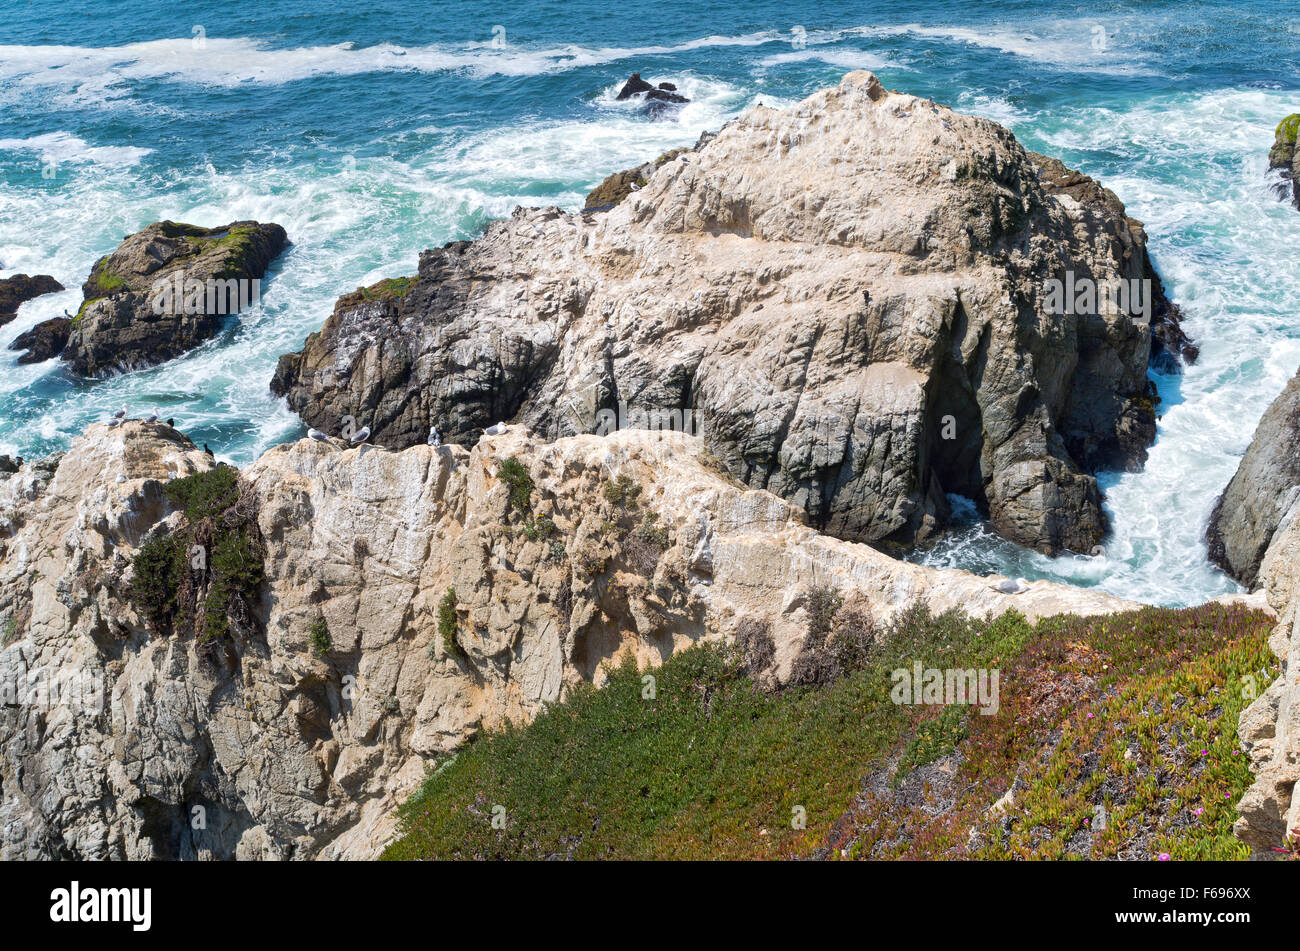 Bodega head falaises et affleurement rocheux le long de la côte pacifique de Californie Banque D'Images